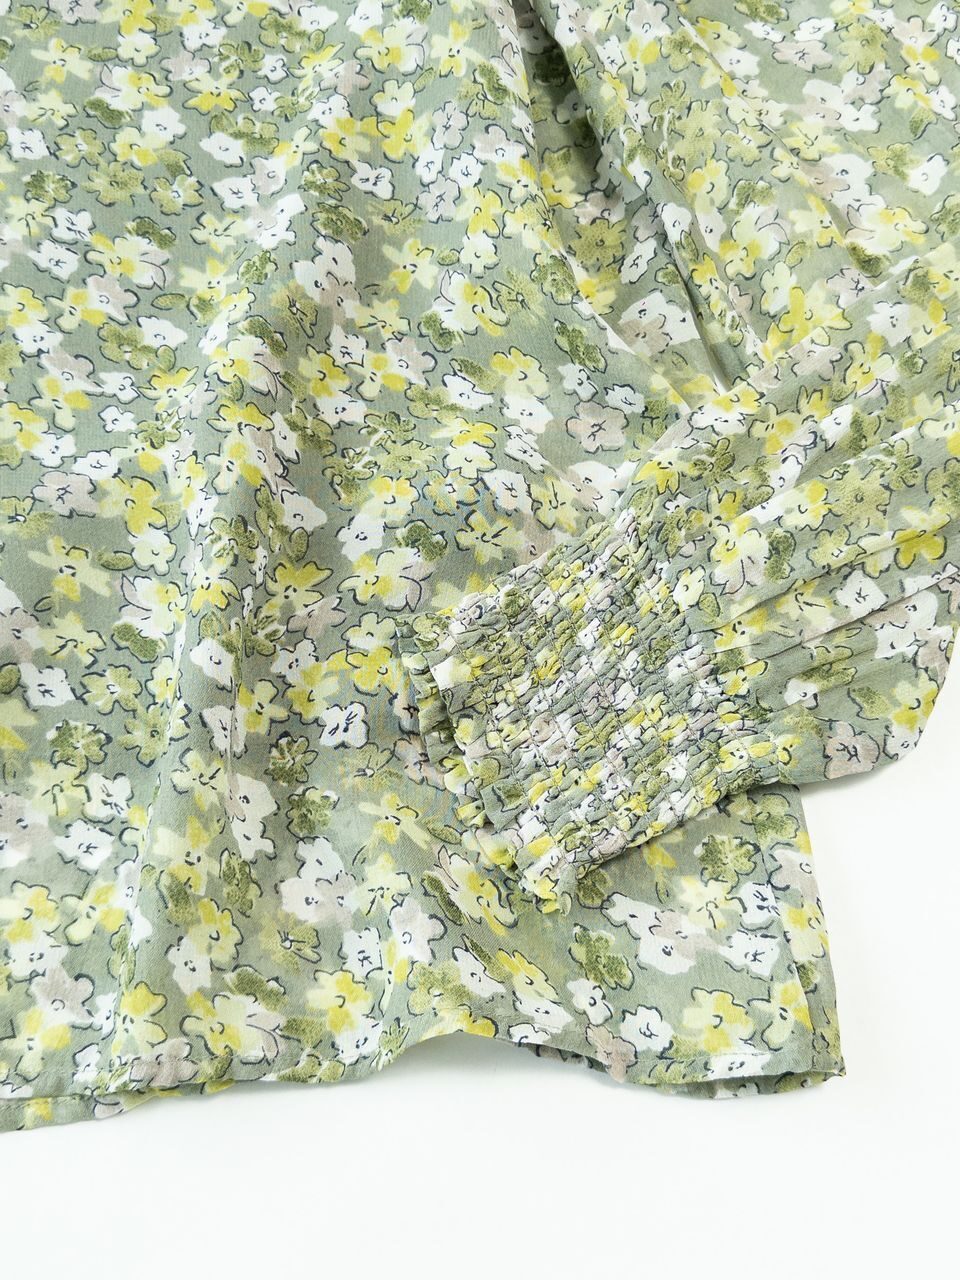 Блуза свободная из просвечивающей ткани с майкой цвет зеленый/цветы размер EUR 34 (rus 40) C&A